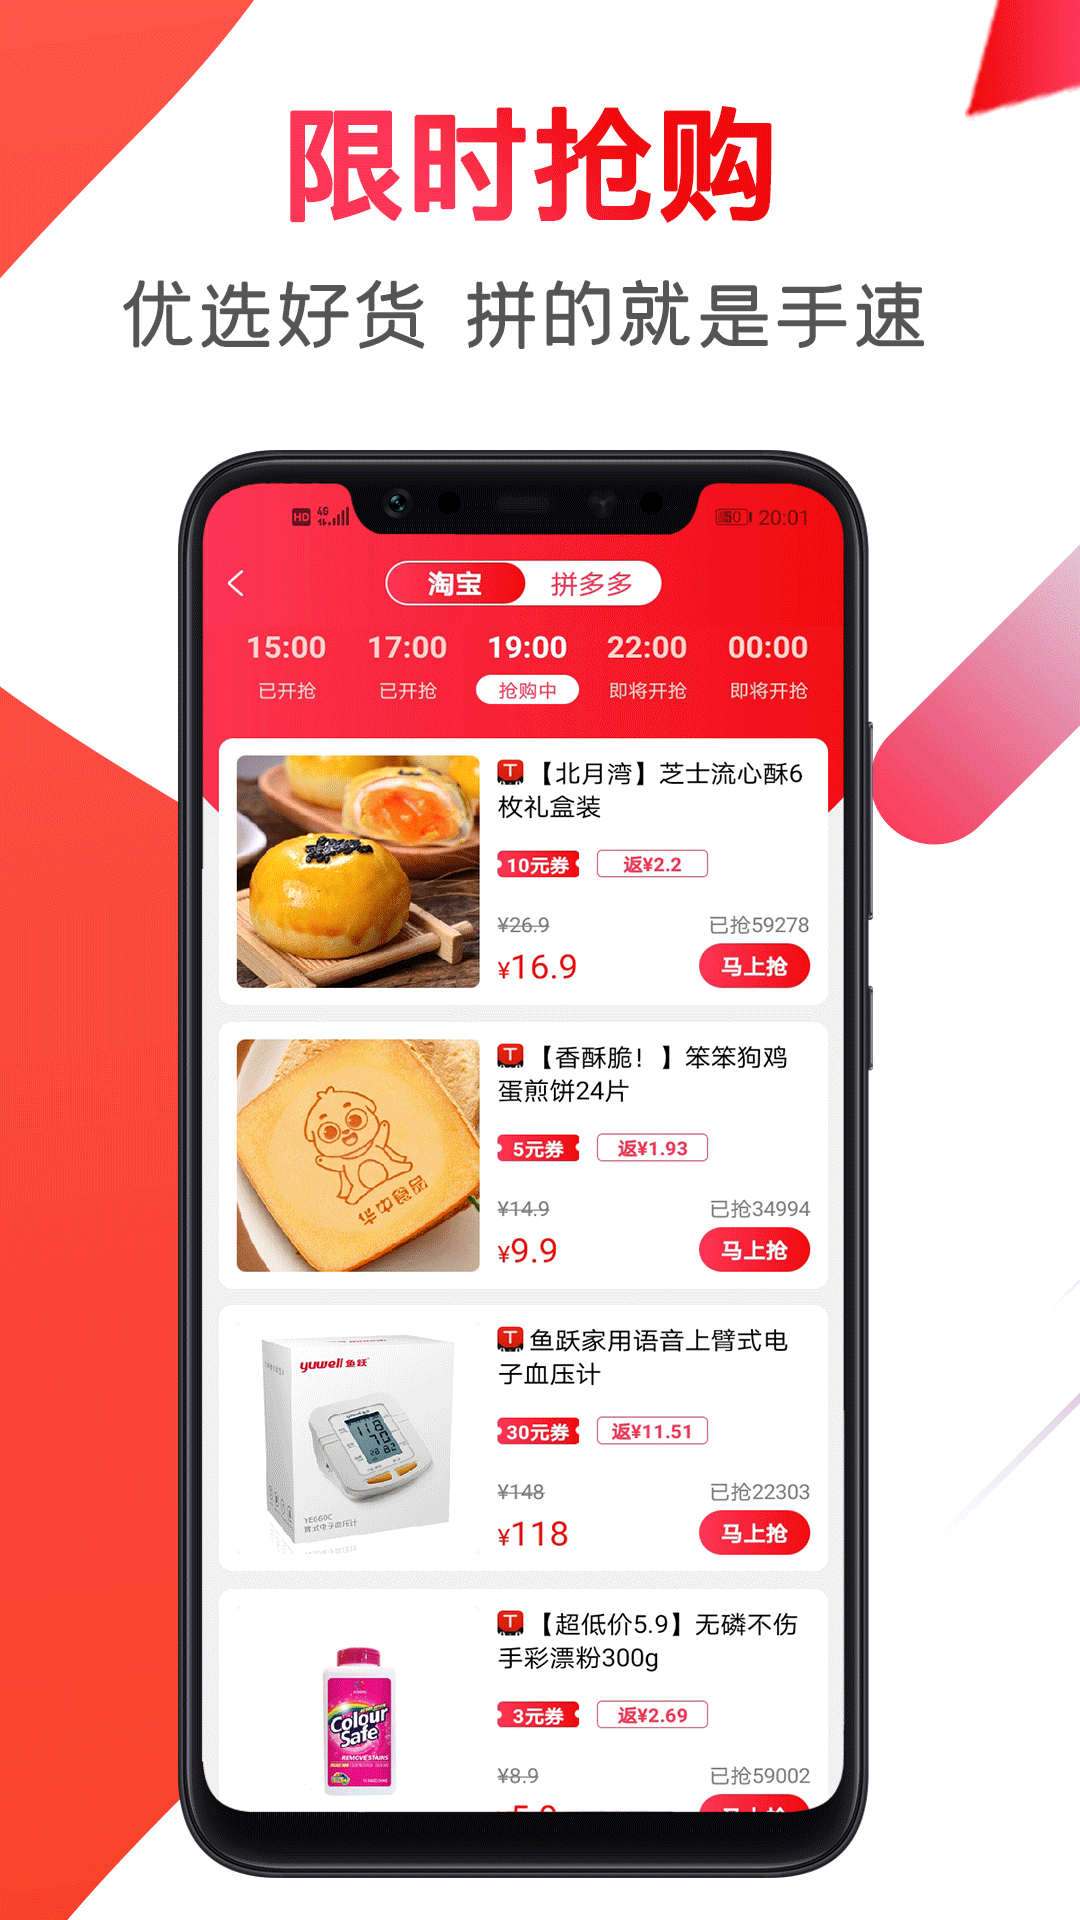 骑士卡北京app应用开发